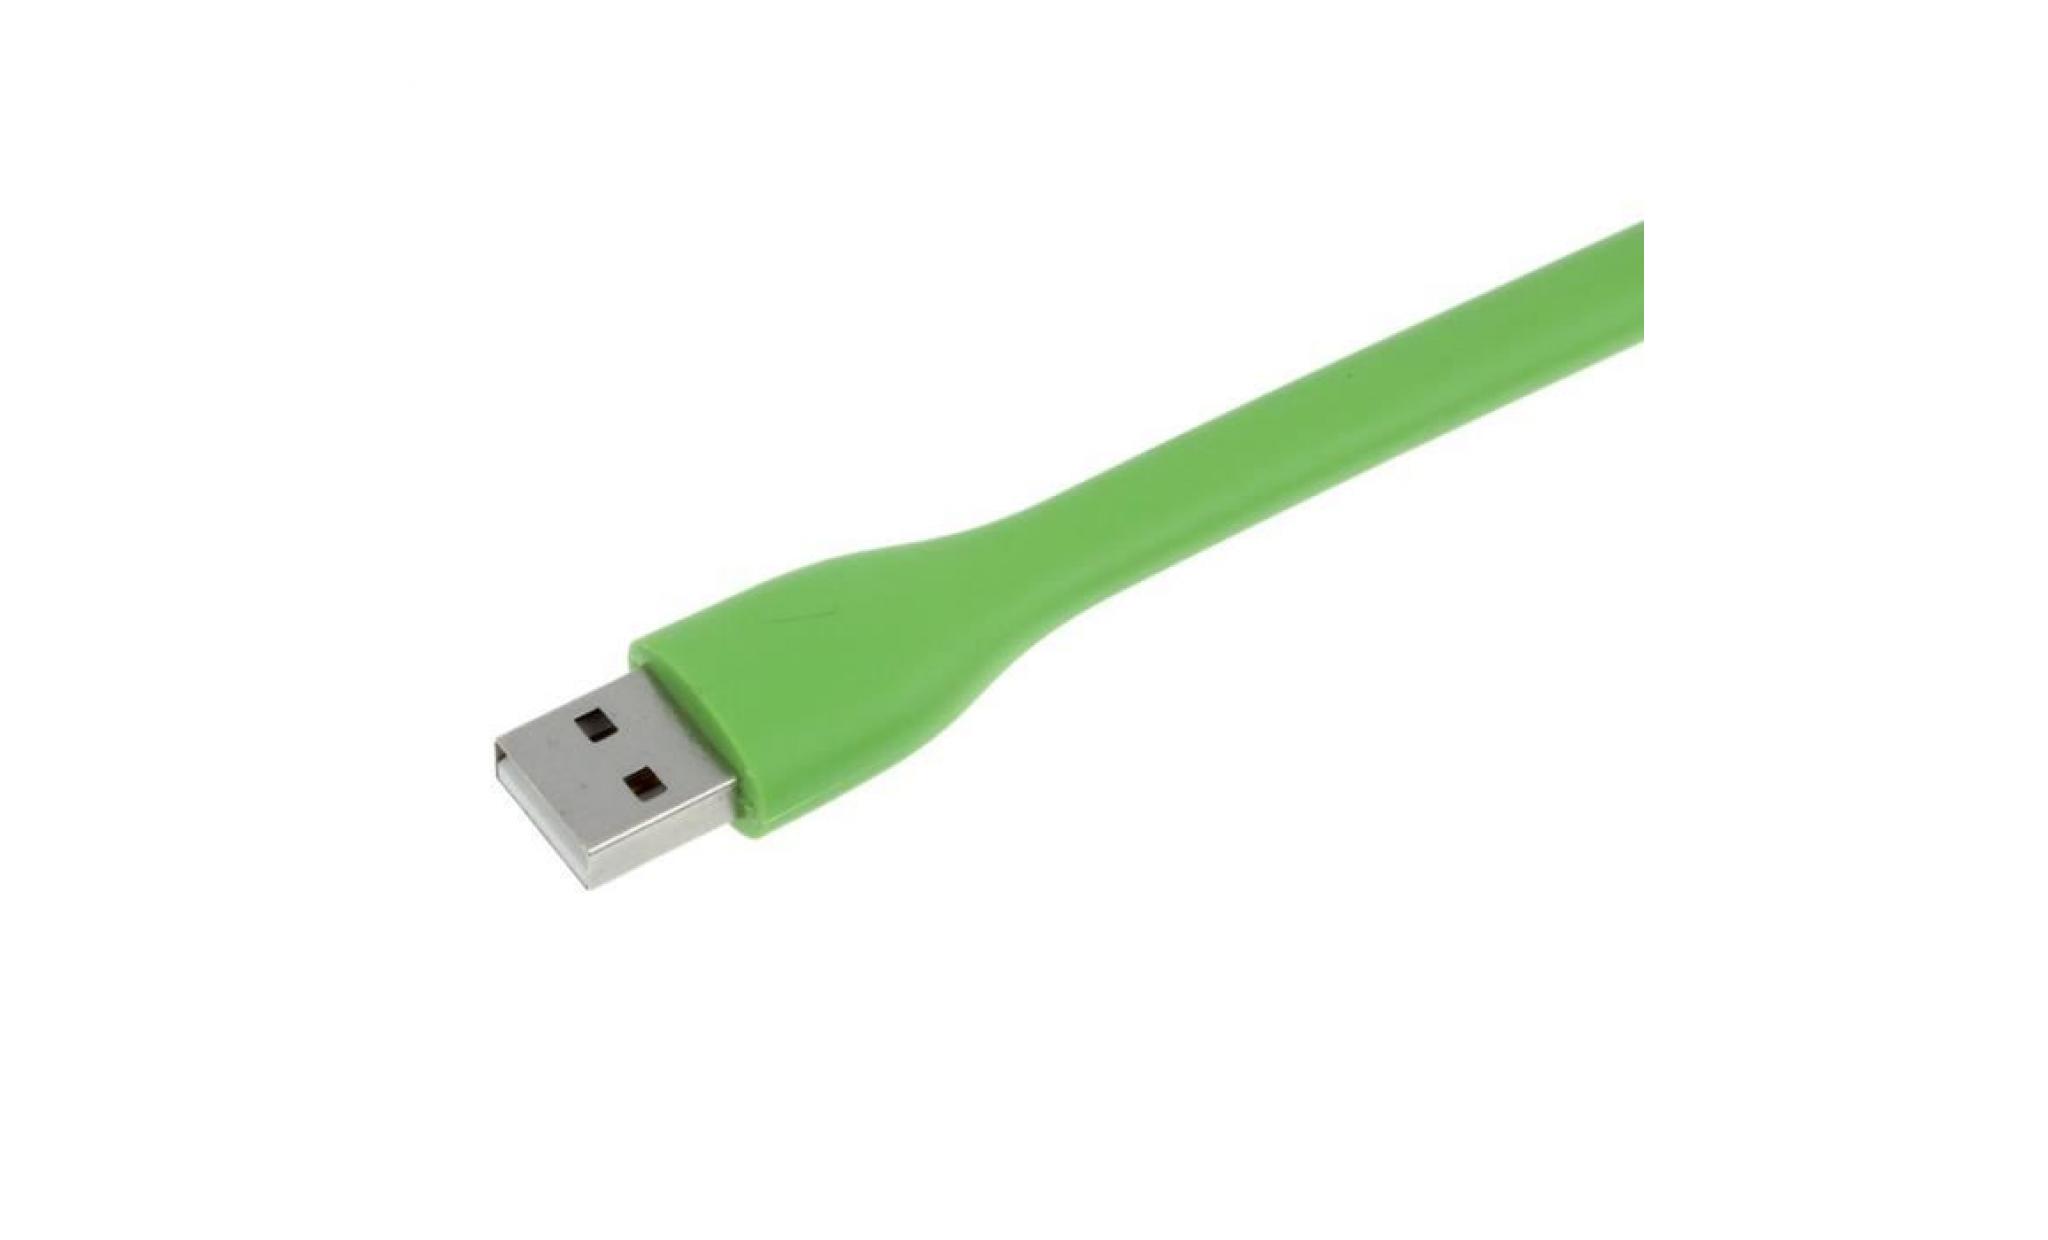 vert mini portable usb led lampe bendable pc banque de puissance partenaire gn lxl5013012a pas cher